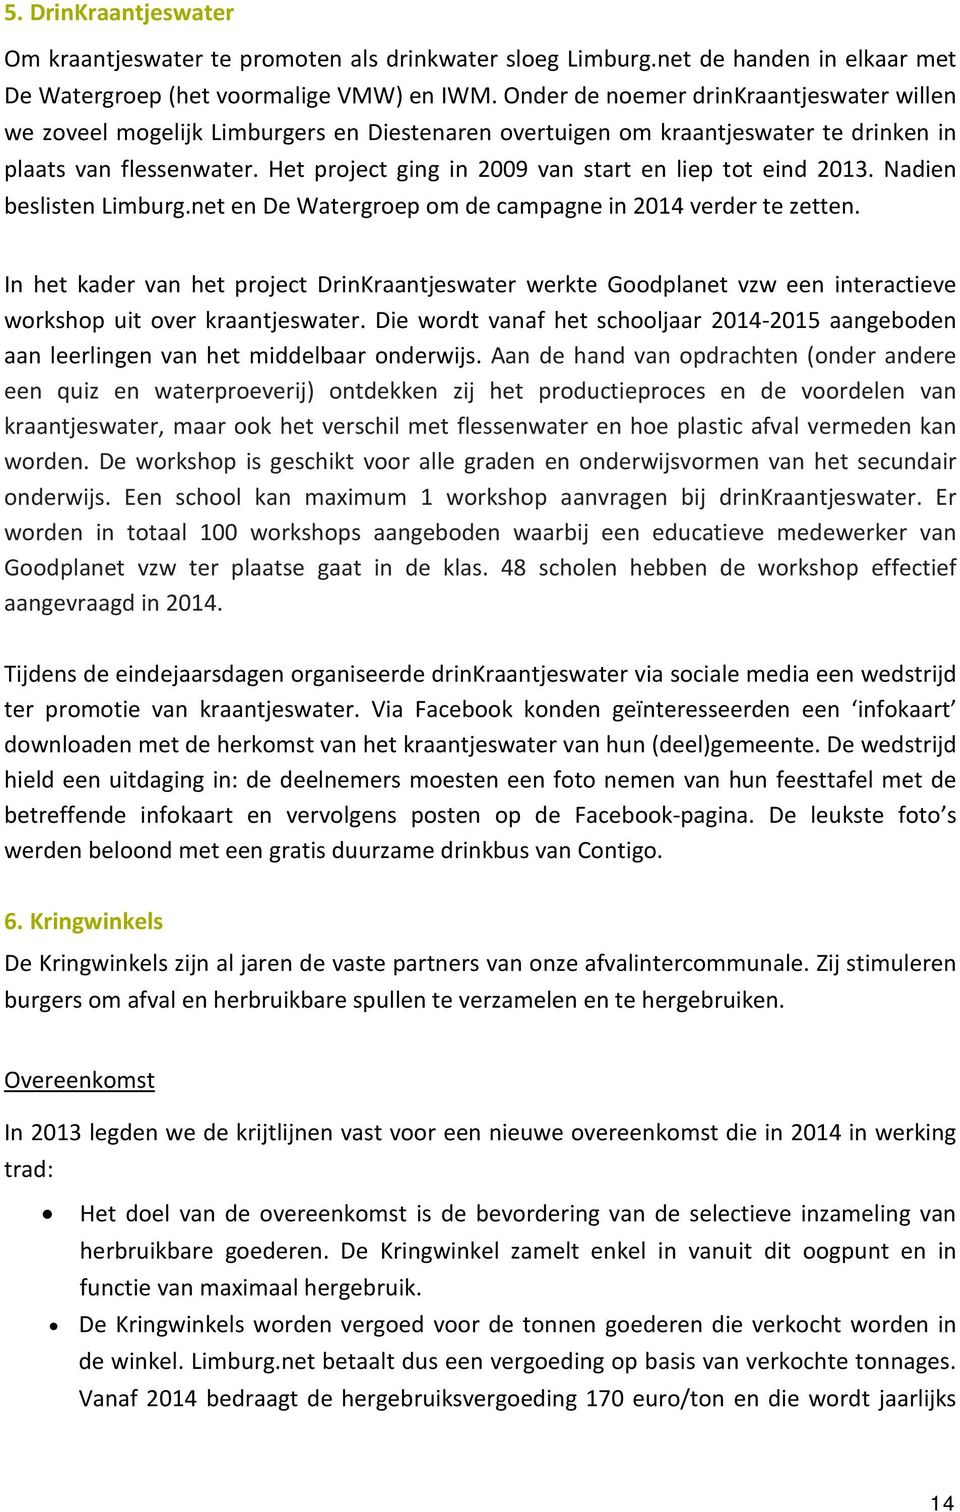 Het project ging in 2009 van start en liep tot eind 2013. Nadien beslisten Limburg.net en De Watergroep om de campagne in 2014 verder te zetten.